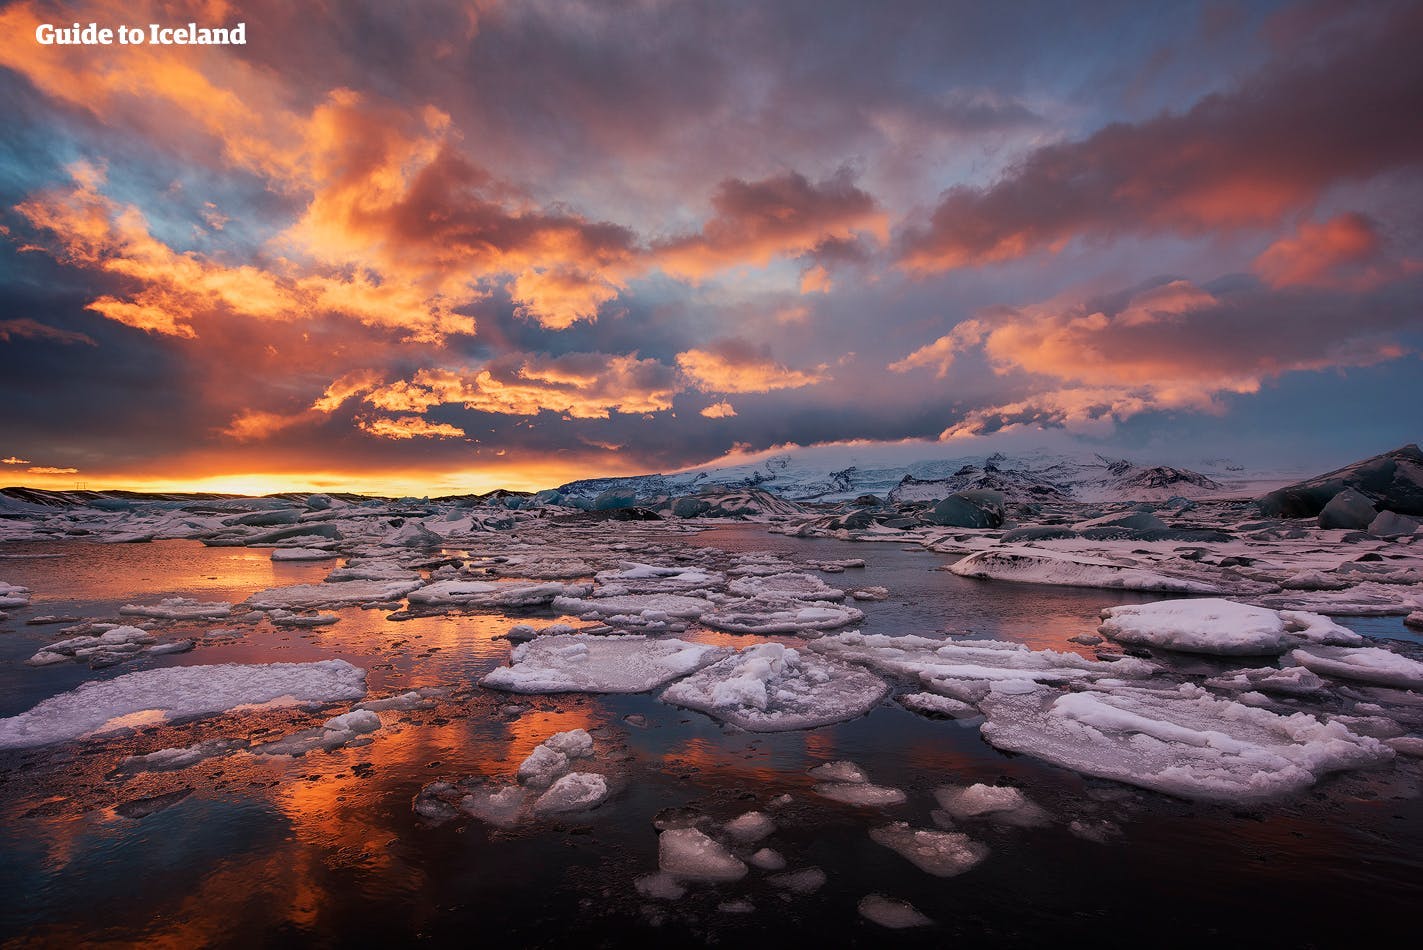 Wspaniałe zamarznięte krajobrazy laguny lodowcowej Jökulsárlón, położonej w południowej Islandii.